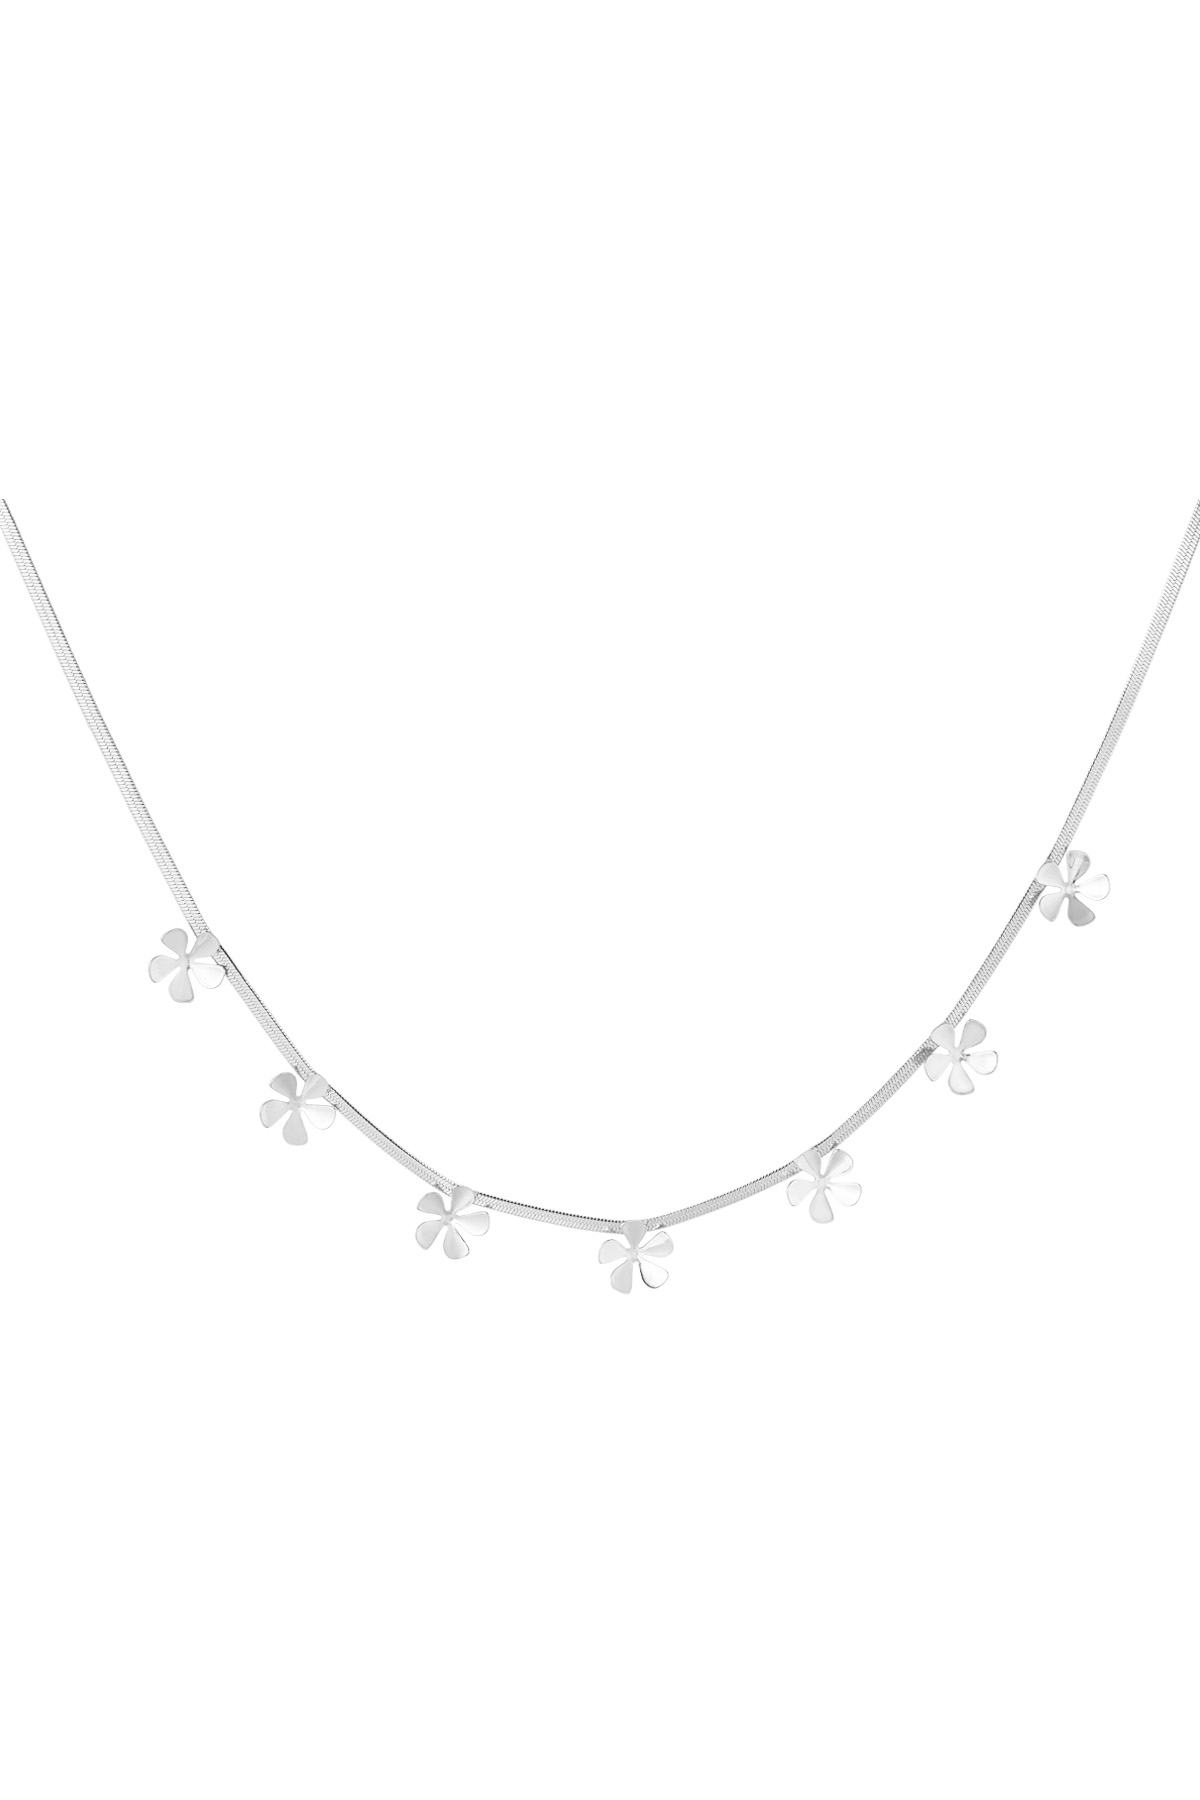 Inselblumen-Halskette – Silber